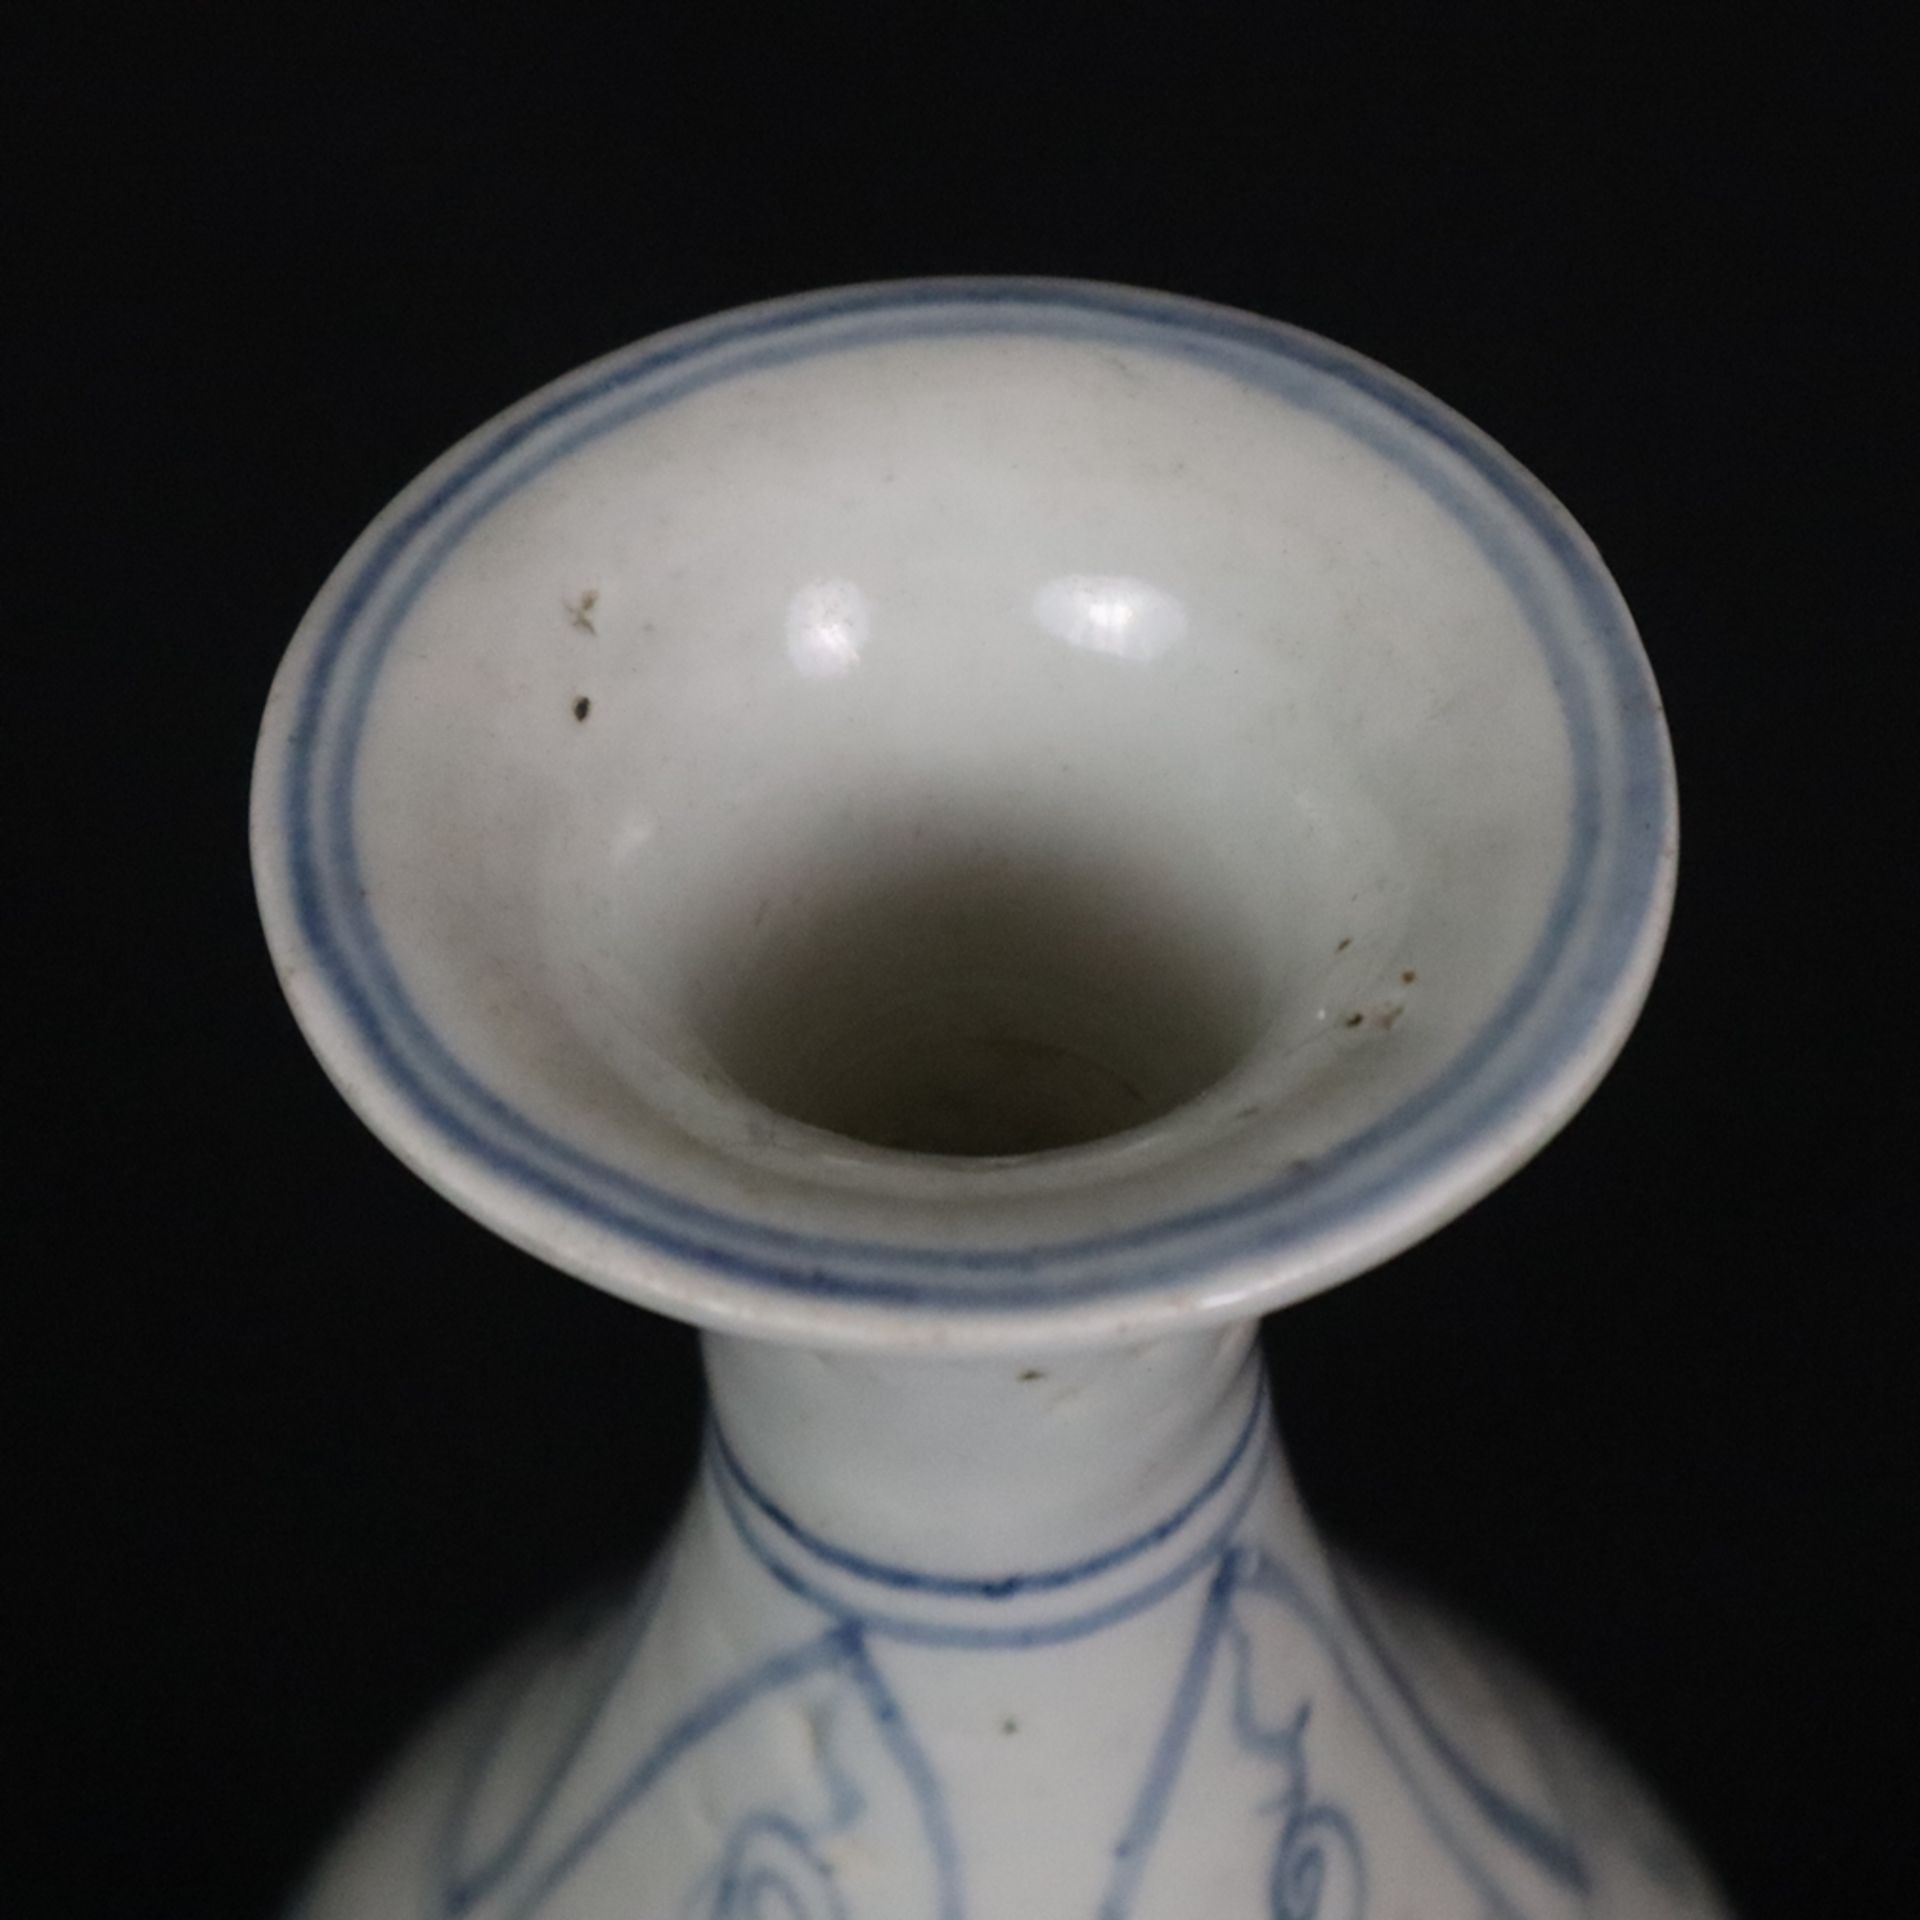 Flaschenvase - China, vom Typ „Yuhuchun“, Porzellanvase mit birnenförmigem Körper, dekoriert mit Lo - Bild 2 aus 9